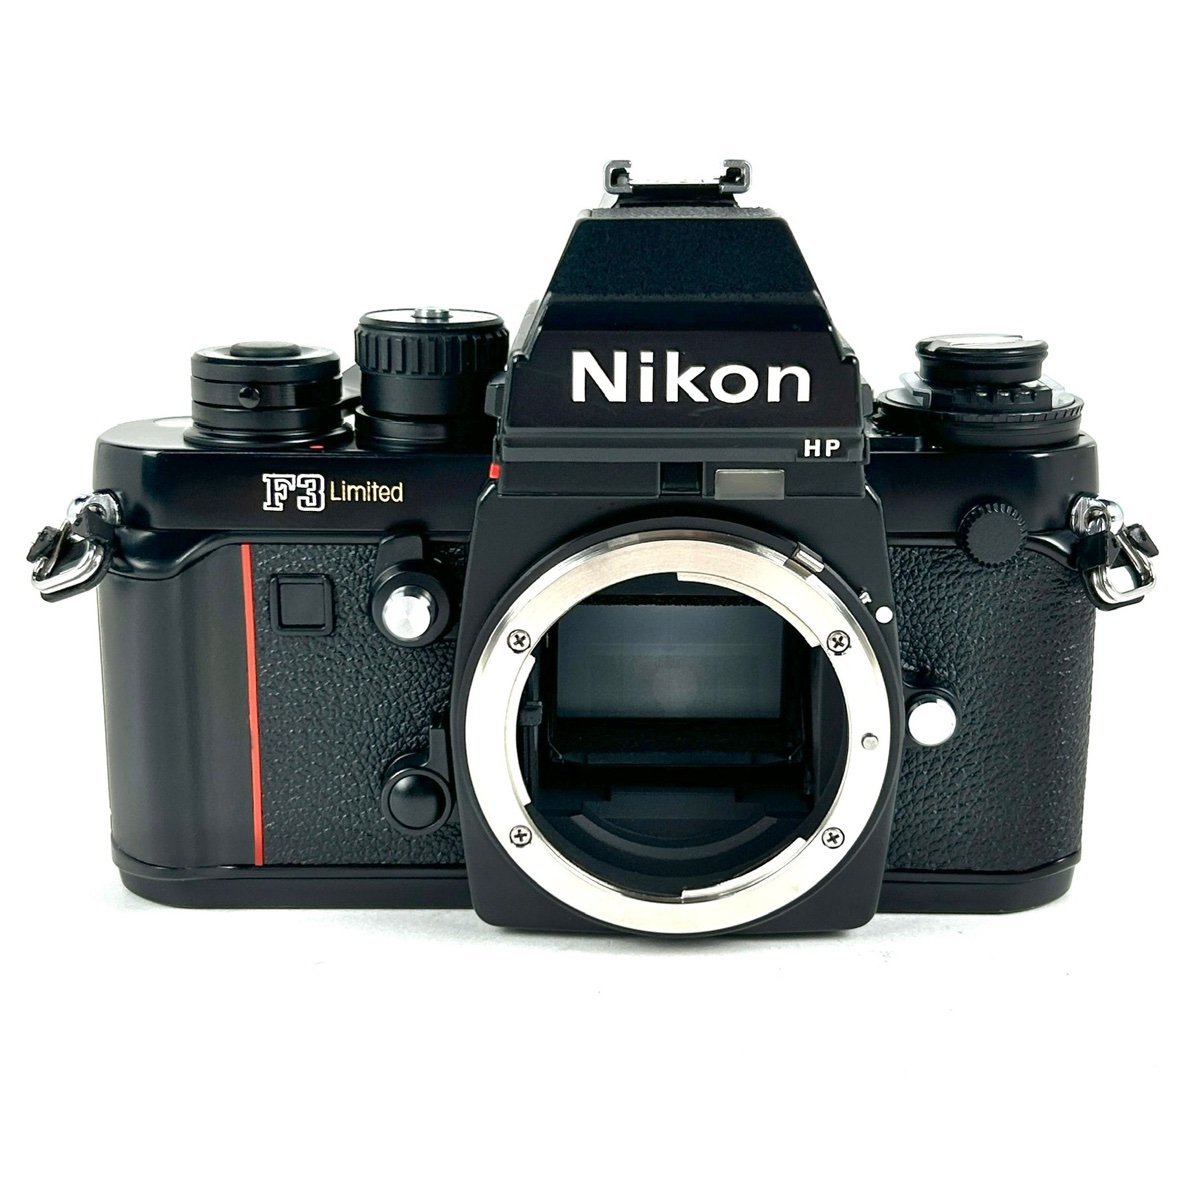 国産品 HP F3 Nikon ニコン Limited 【中古】 一眼レフカメラ